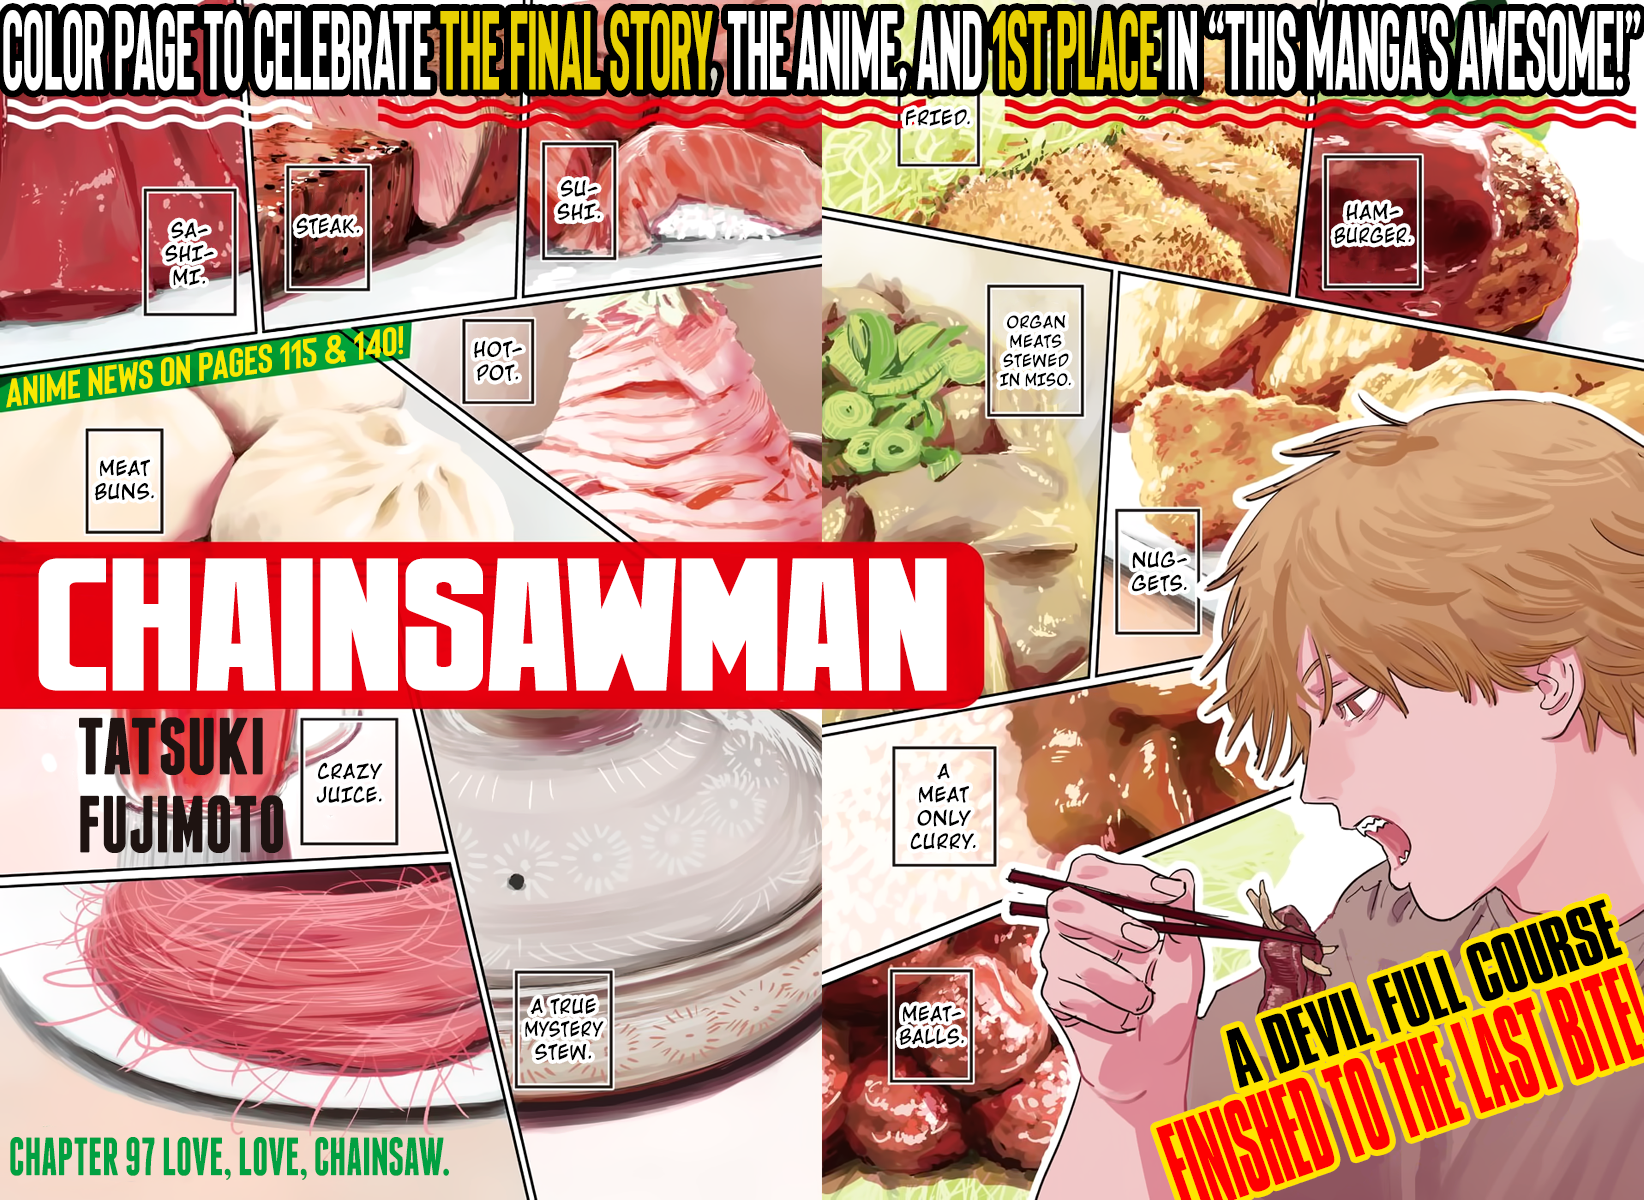 Chainsaw Man Manga Chapter - 97 - image 2